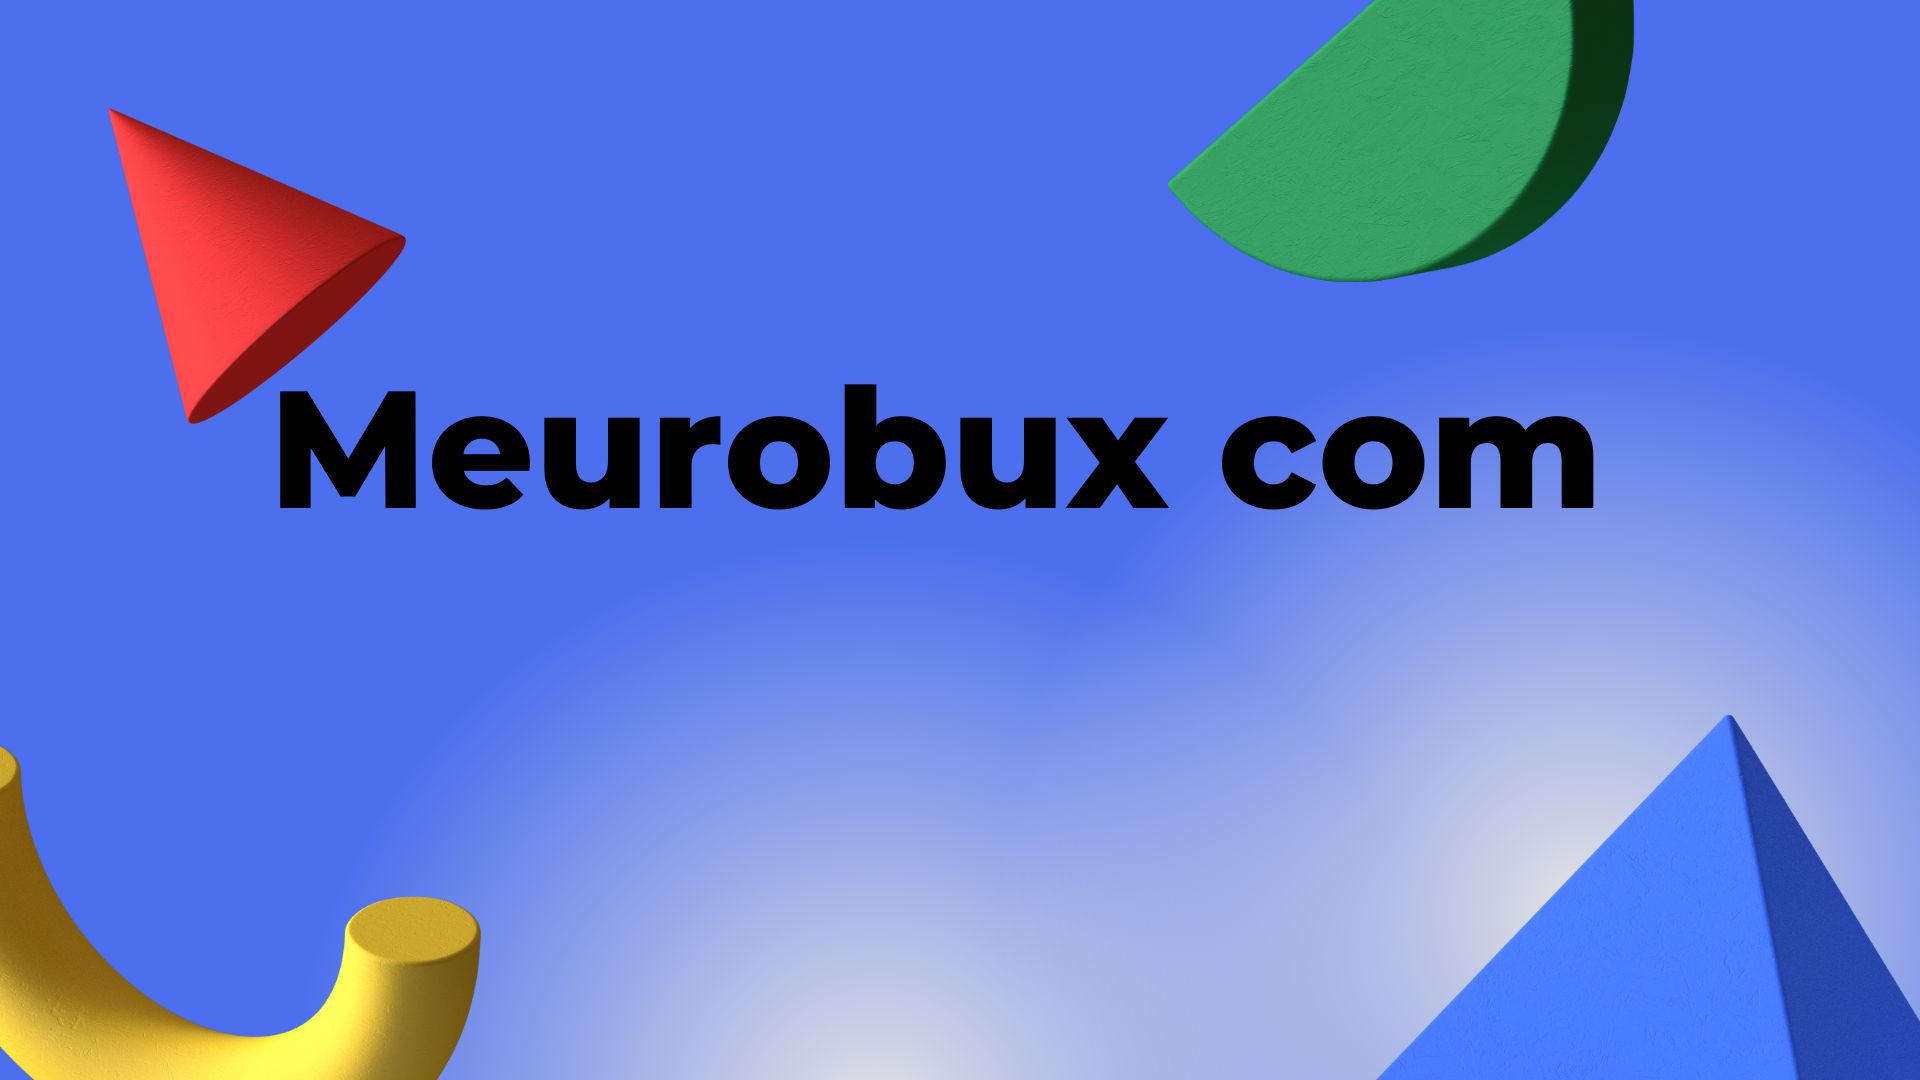 Meurobux com